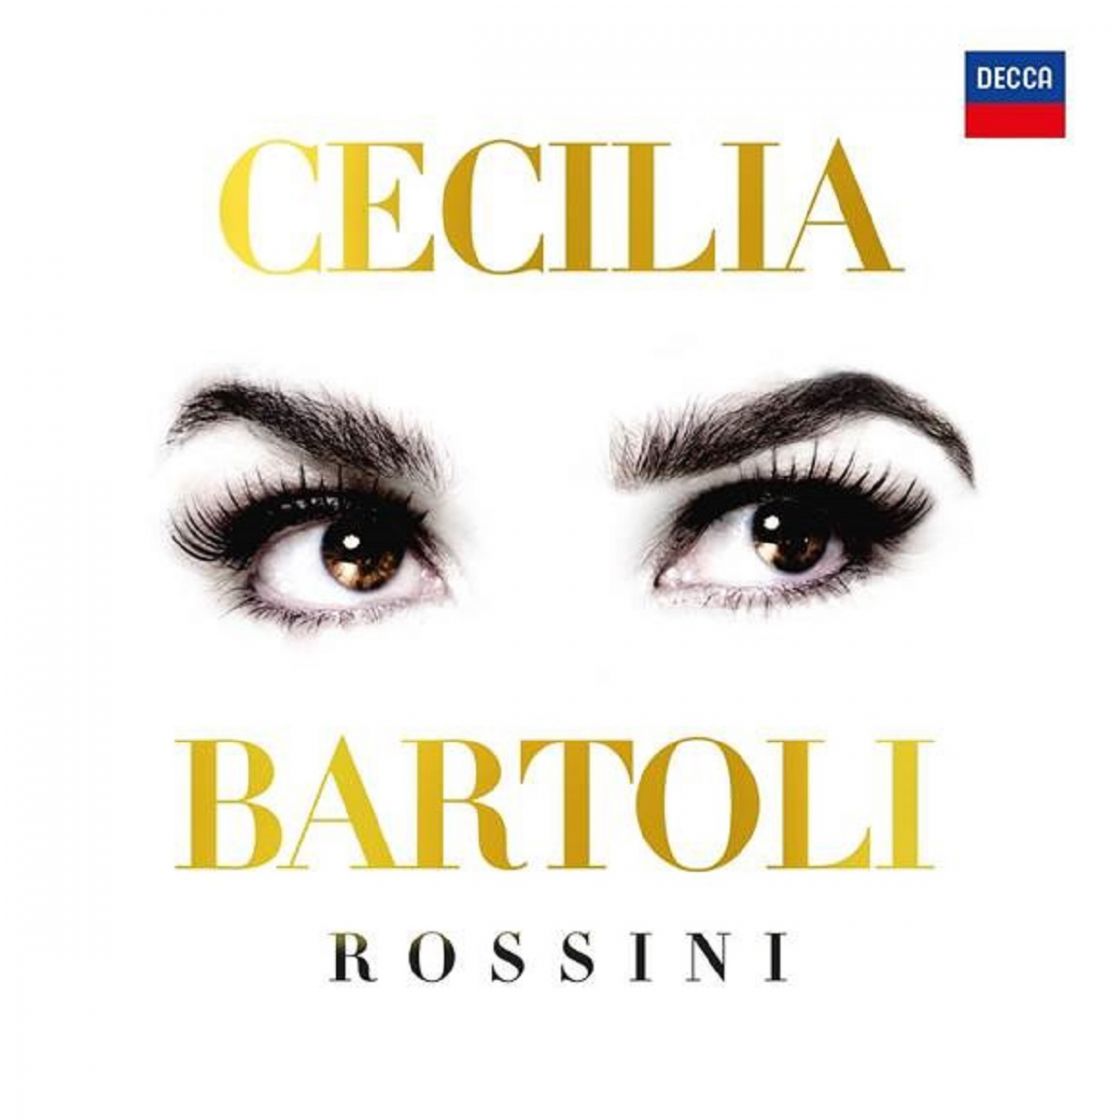 Cecilia Bartoli - Rossini